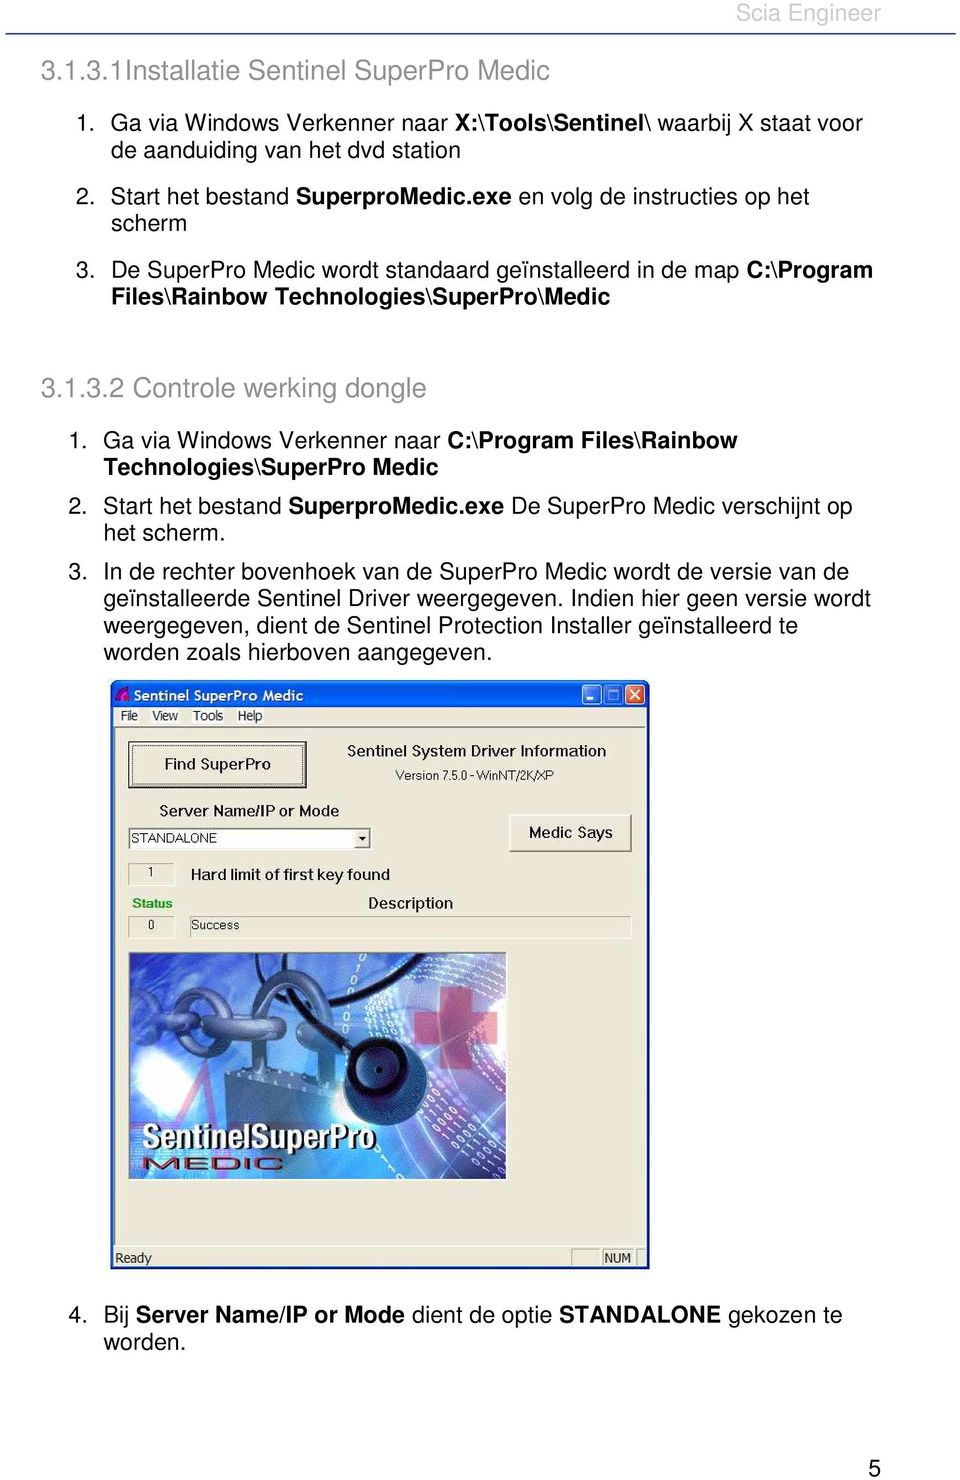 Ga via Windows Verkenner naar C:\Program Files\Rainbow Technologies\SuperPro Medic 2. Start het bestand SuperproMedic.exe De SuperPro Medic verschijnt op het scherm. 3.